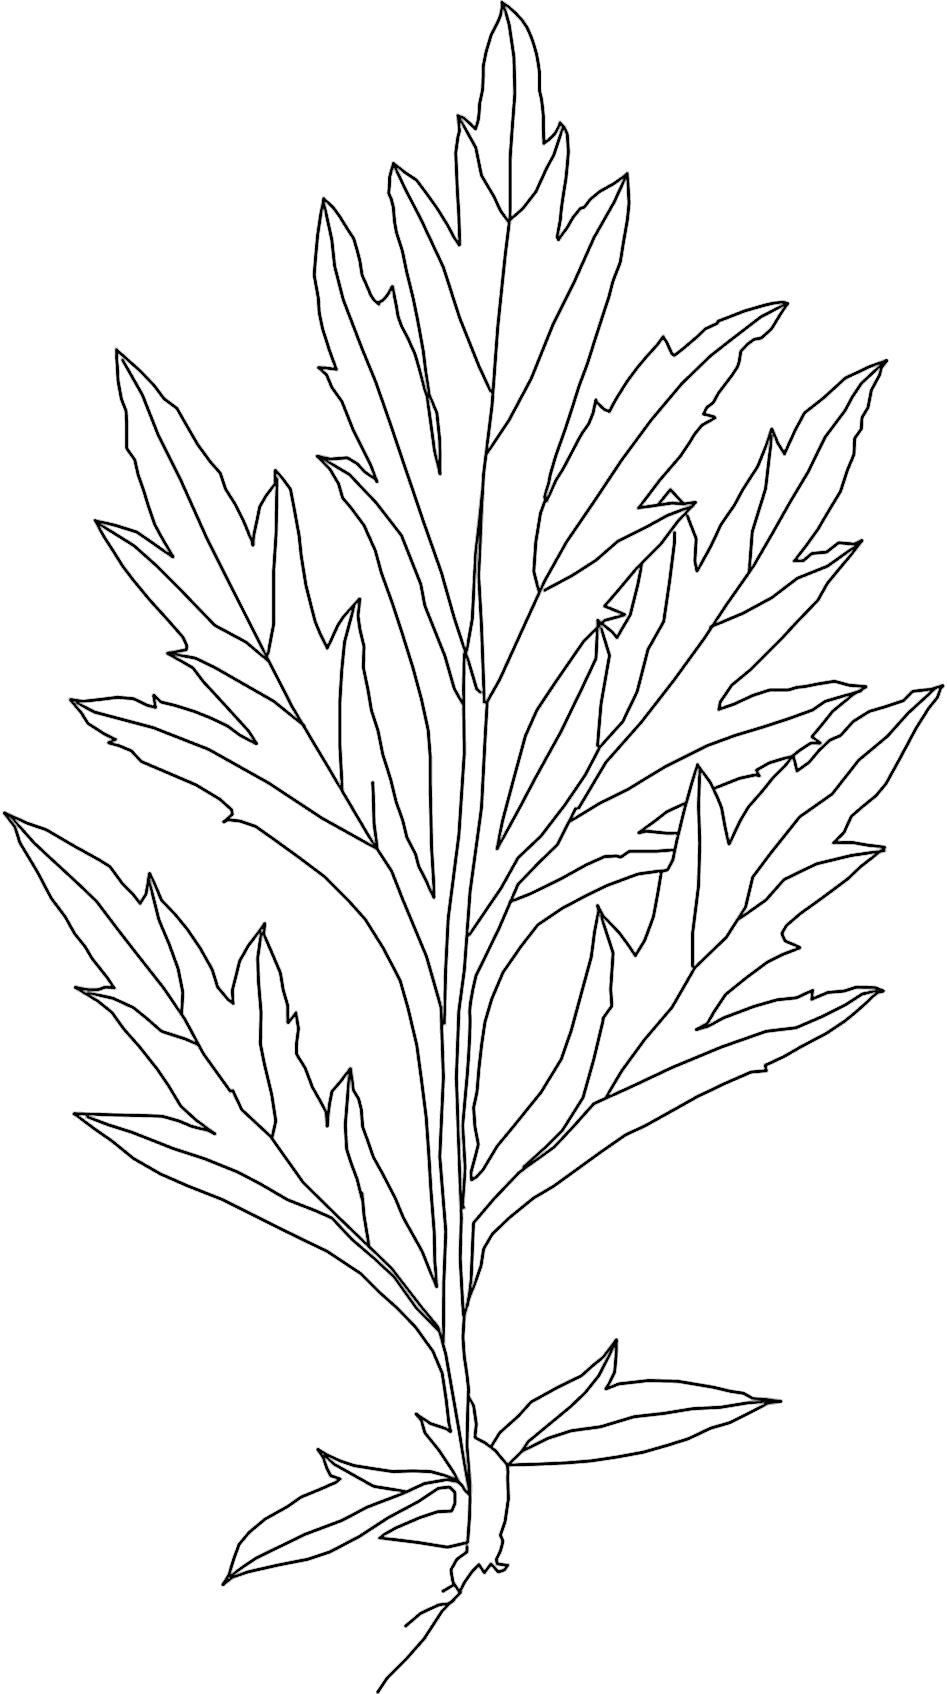 Blatt des Gemeinen Beifuß, Artemisia vulgaris